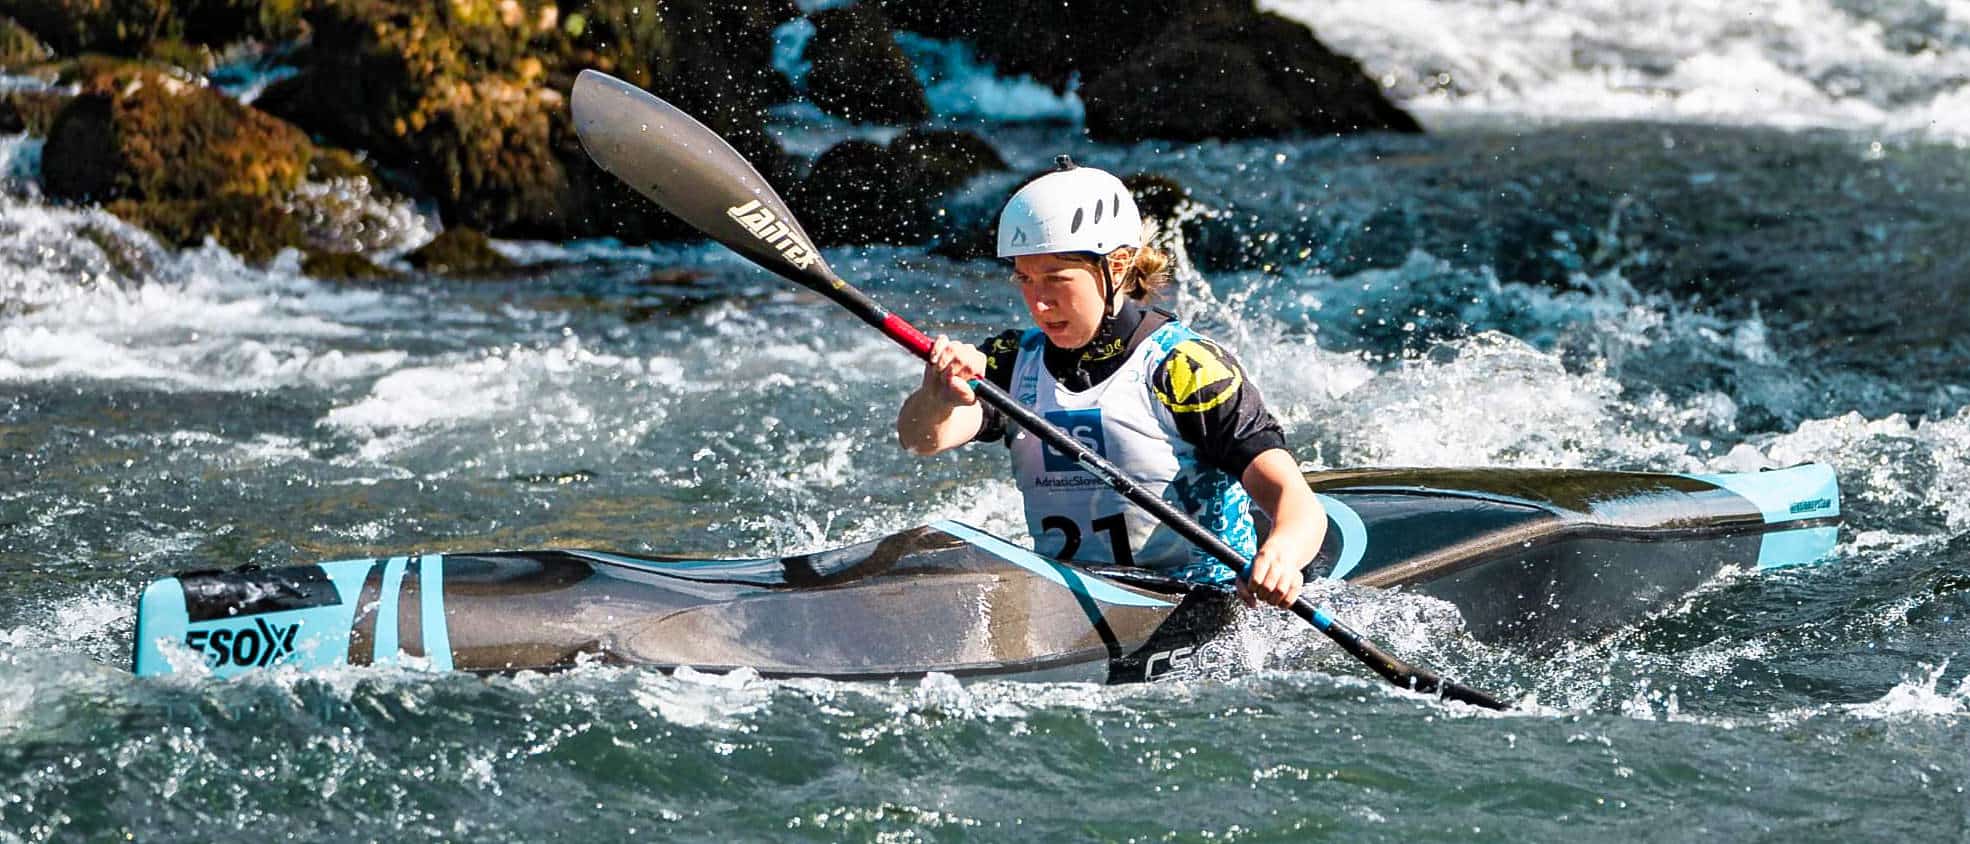 Katie Pocklington Kayaking instructor competing in World Kayaking championships